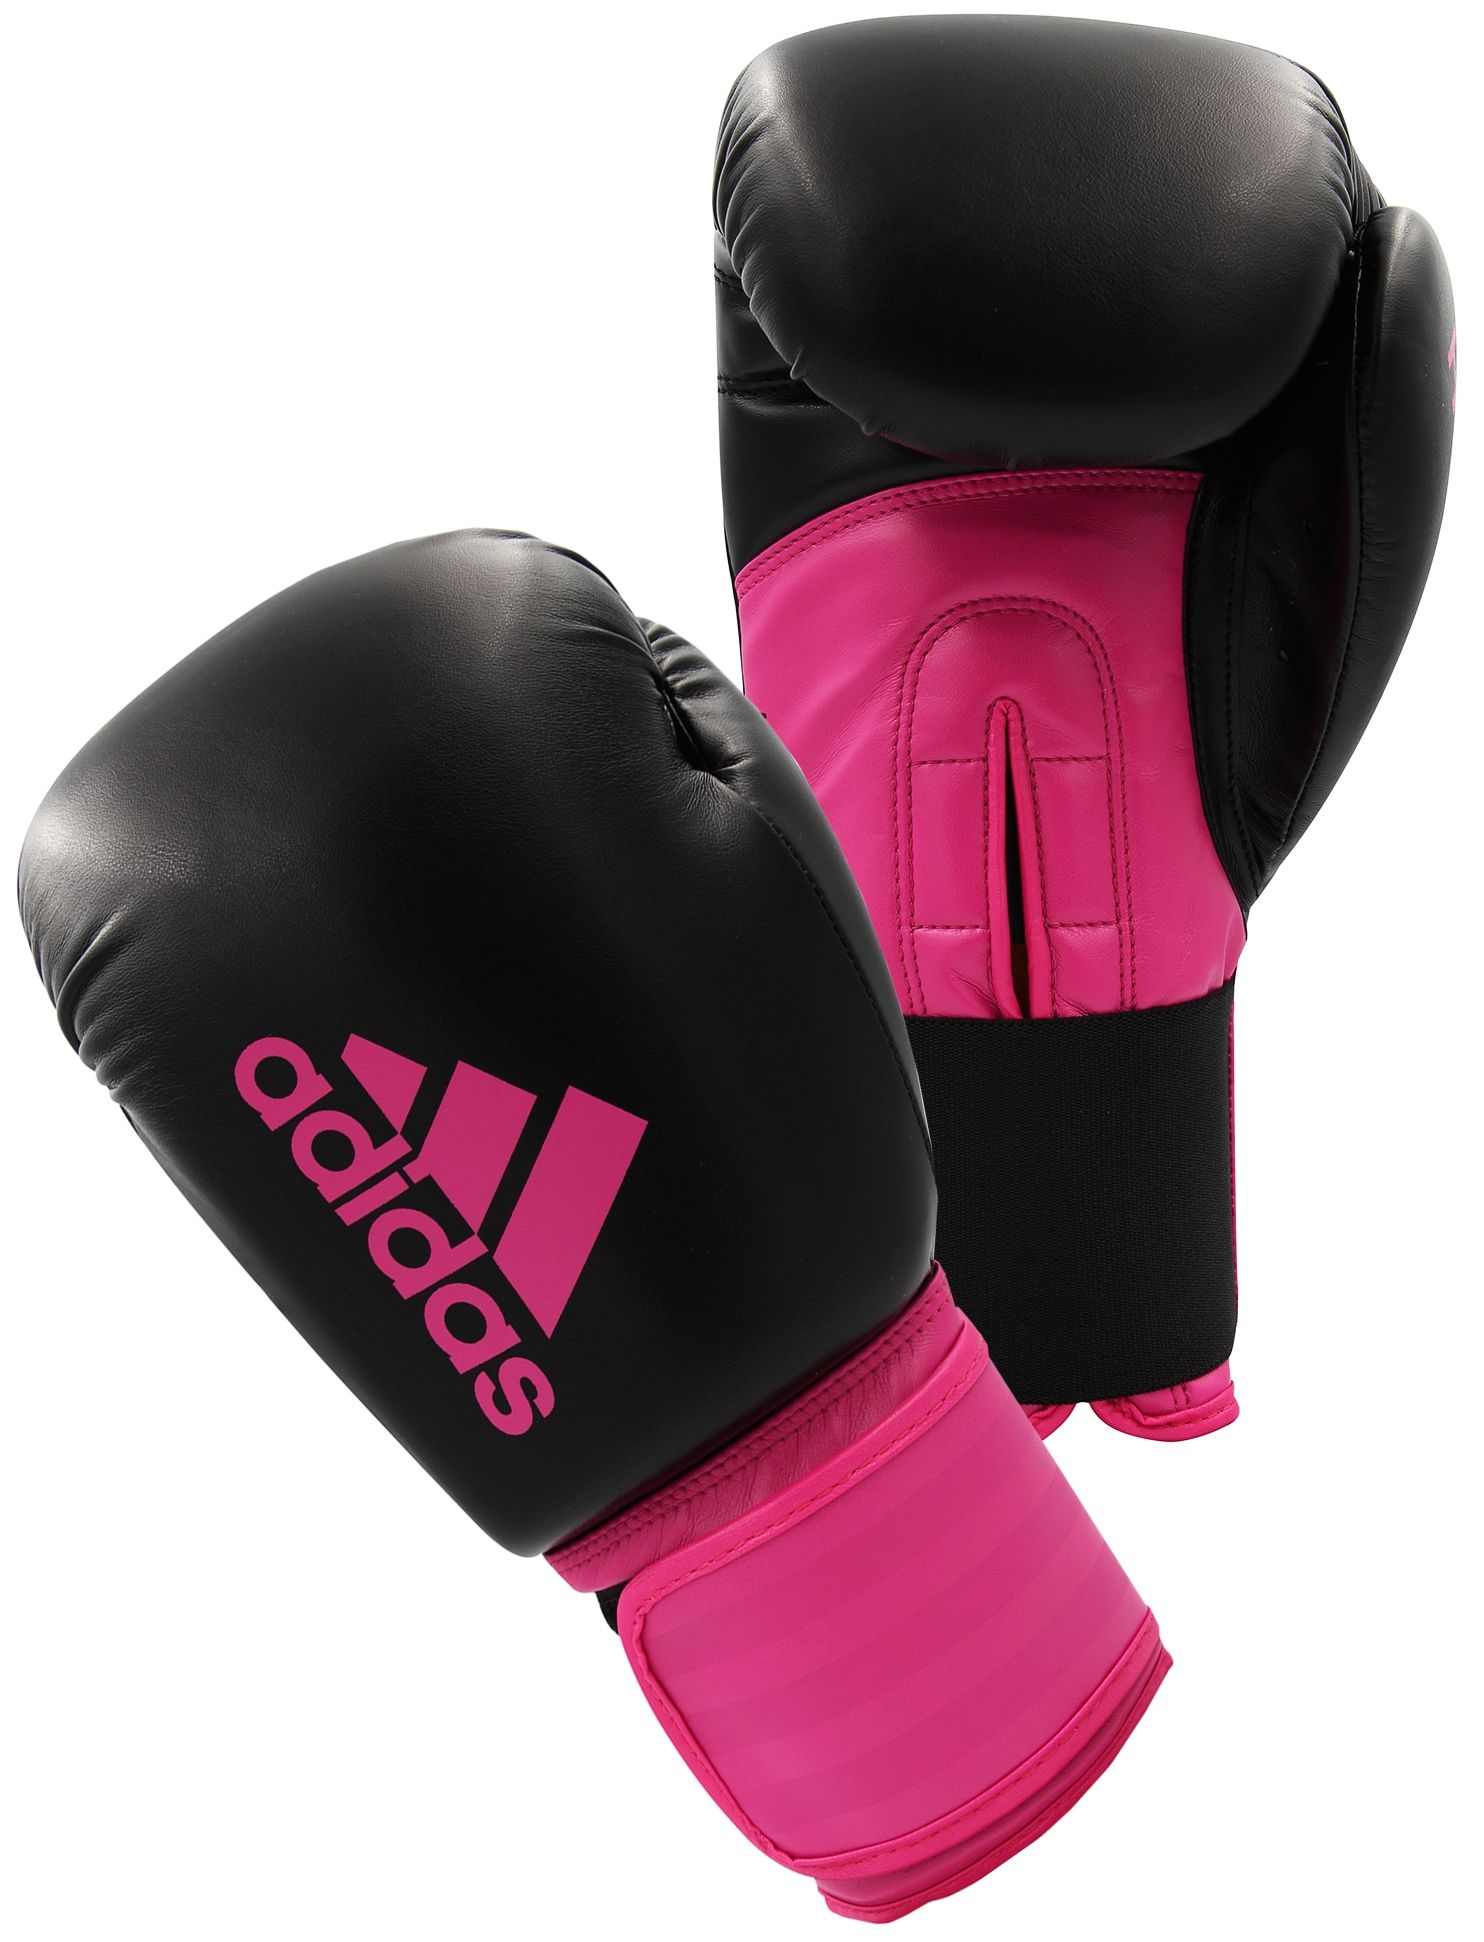 Hybrid 100. Adidas Hybrid 100. Розовые перчатки adidas Hybrid. Розовые боксерские перчатки. Розовые перчатки для бокса.